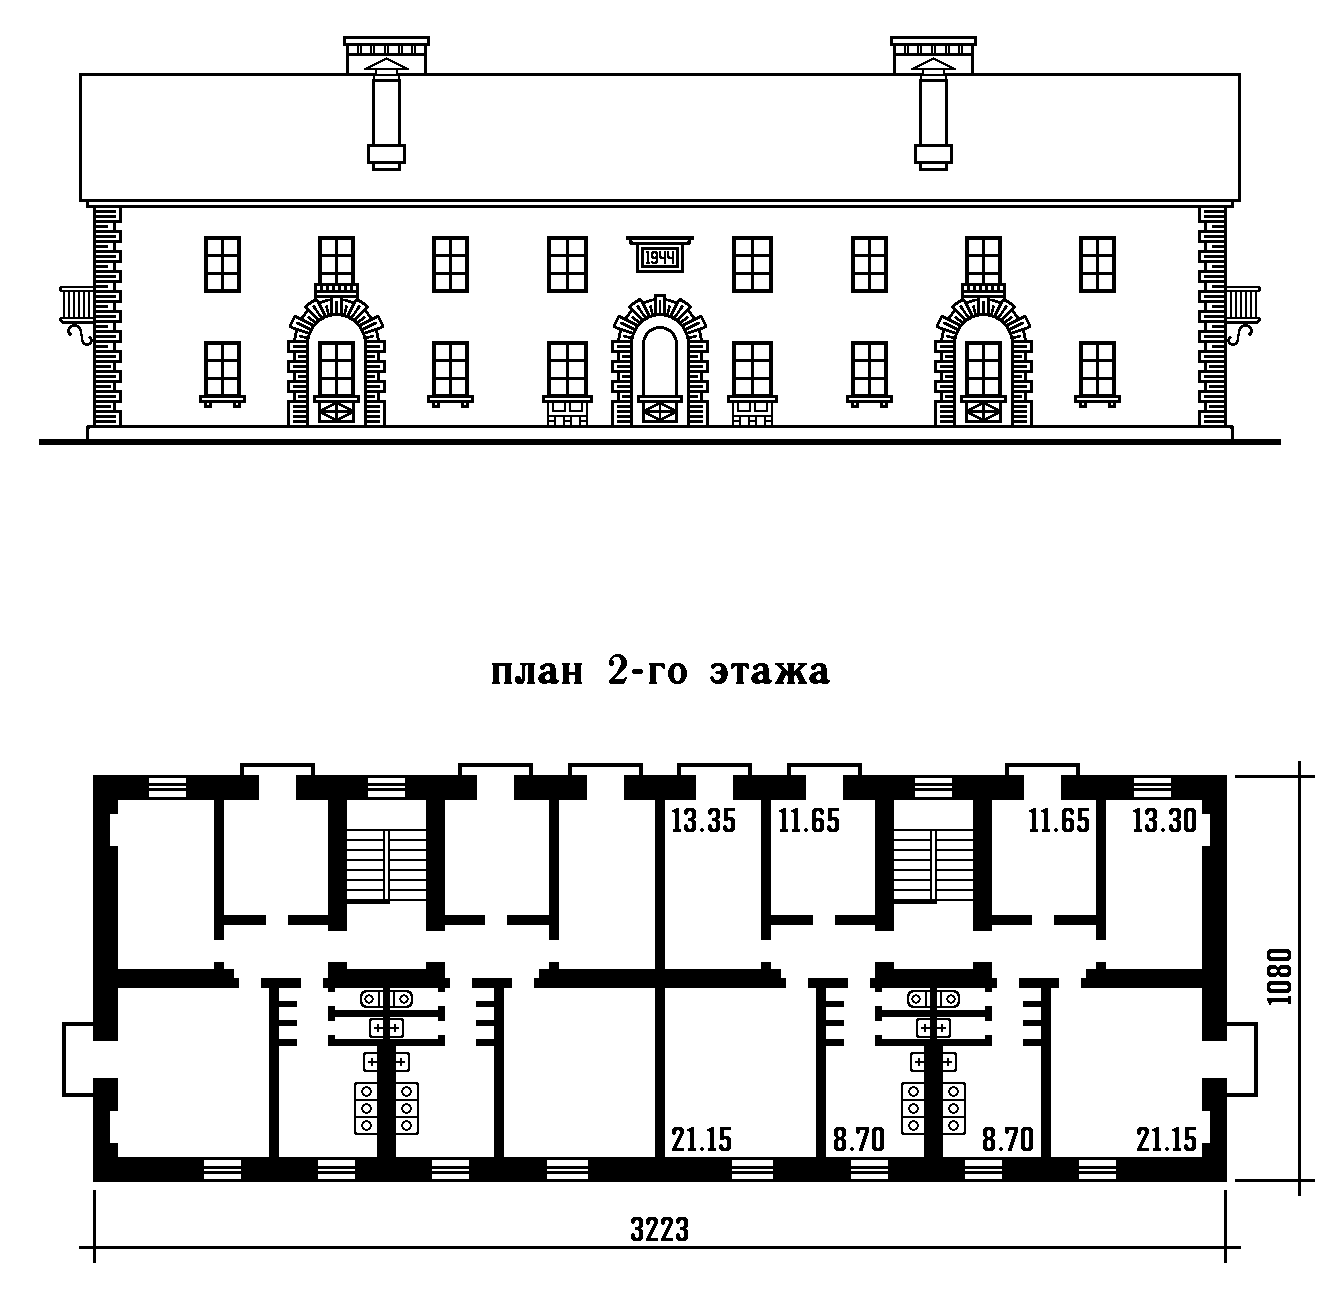 Каталог типовых проектов 1945 года Наркомстроя. Проект 6 (8, 27, 97, ЦБСП № 5711) — Чертежи и планировки